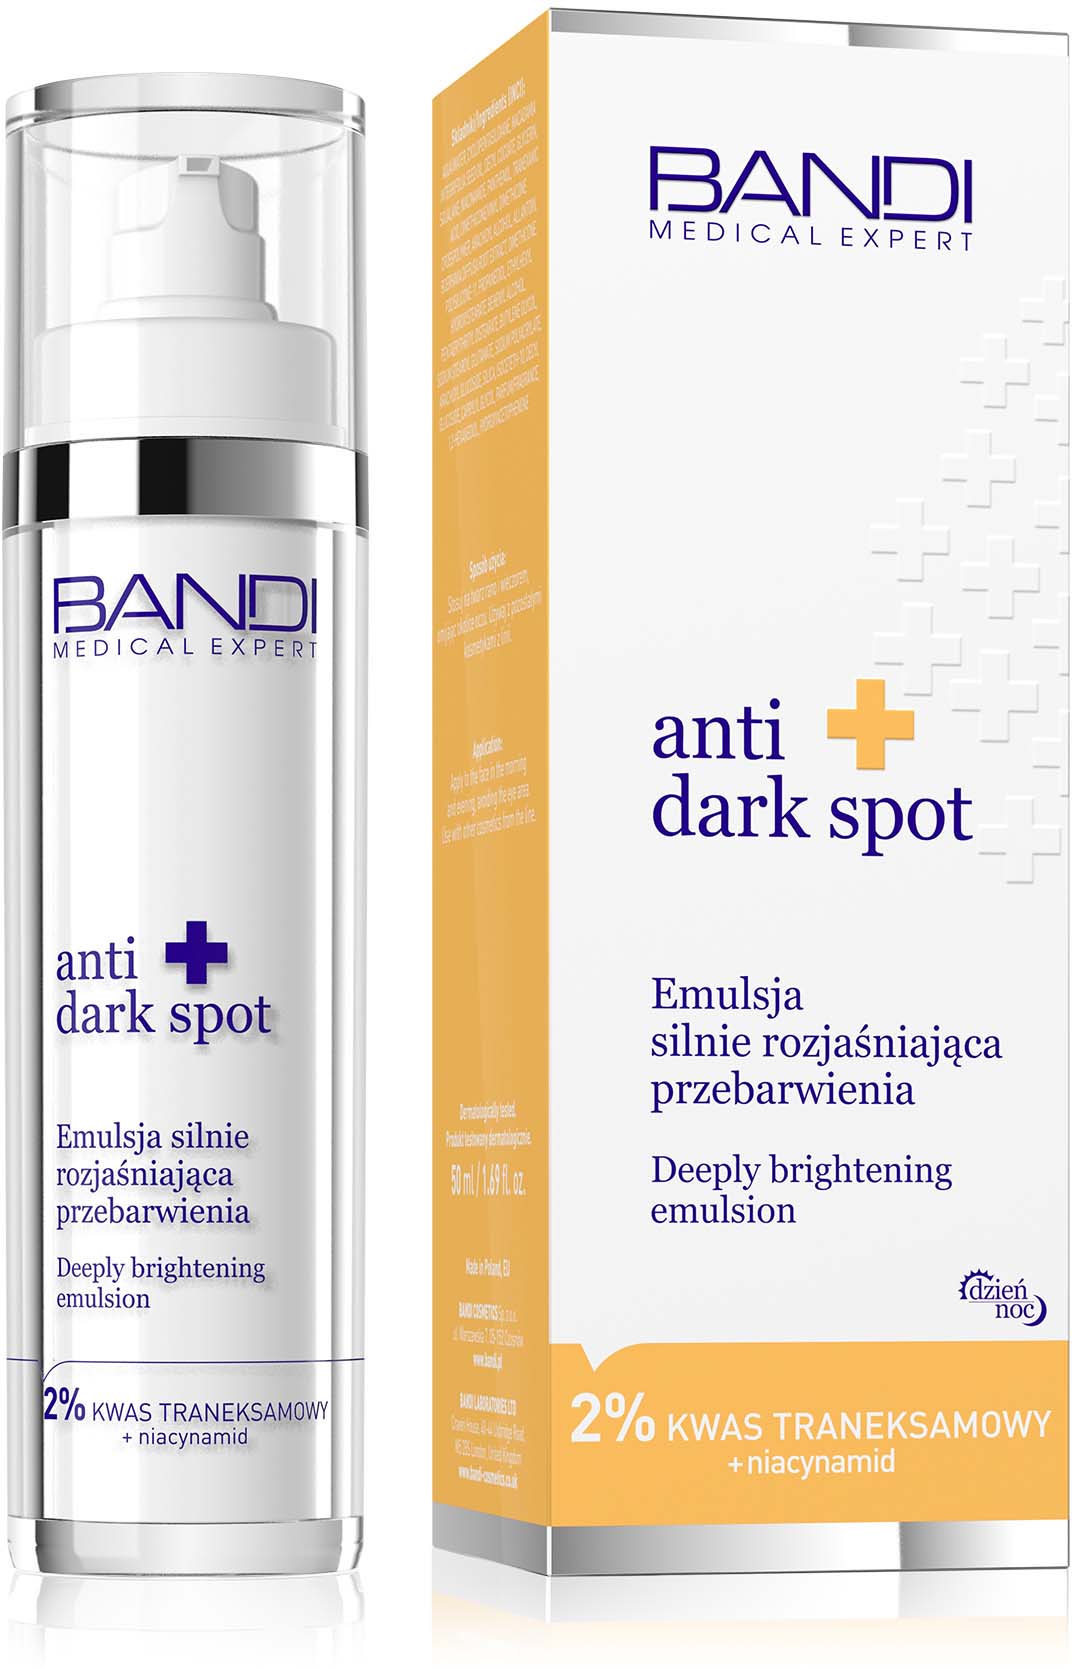 Bandi Anti Dark Spot, emulsja silnie rozjaśniająca przebarwienia, 50ml